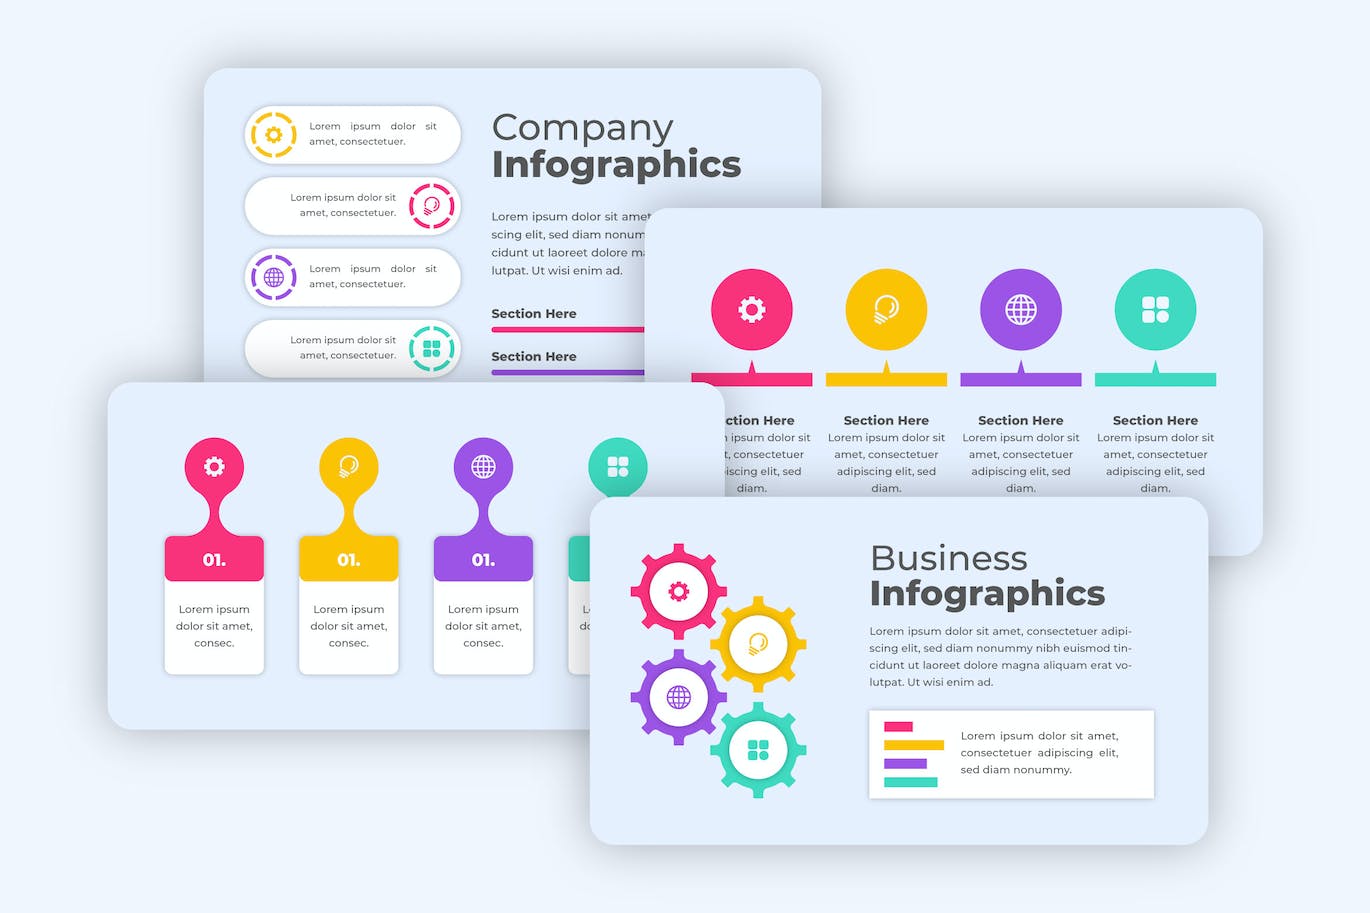 企业账单信息数据图表设计素材 Business Infographics Template 幻灯图表 第1张